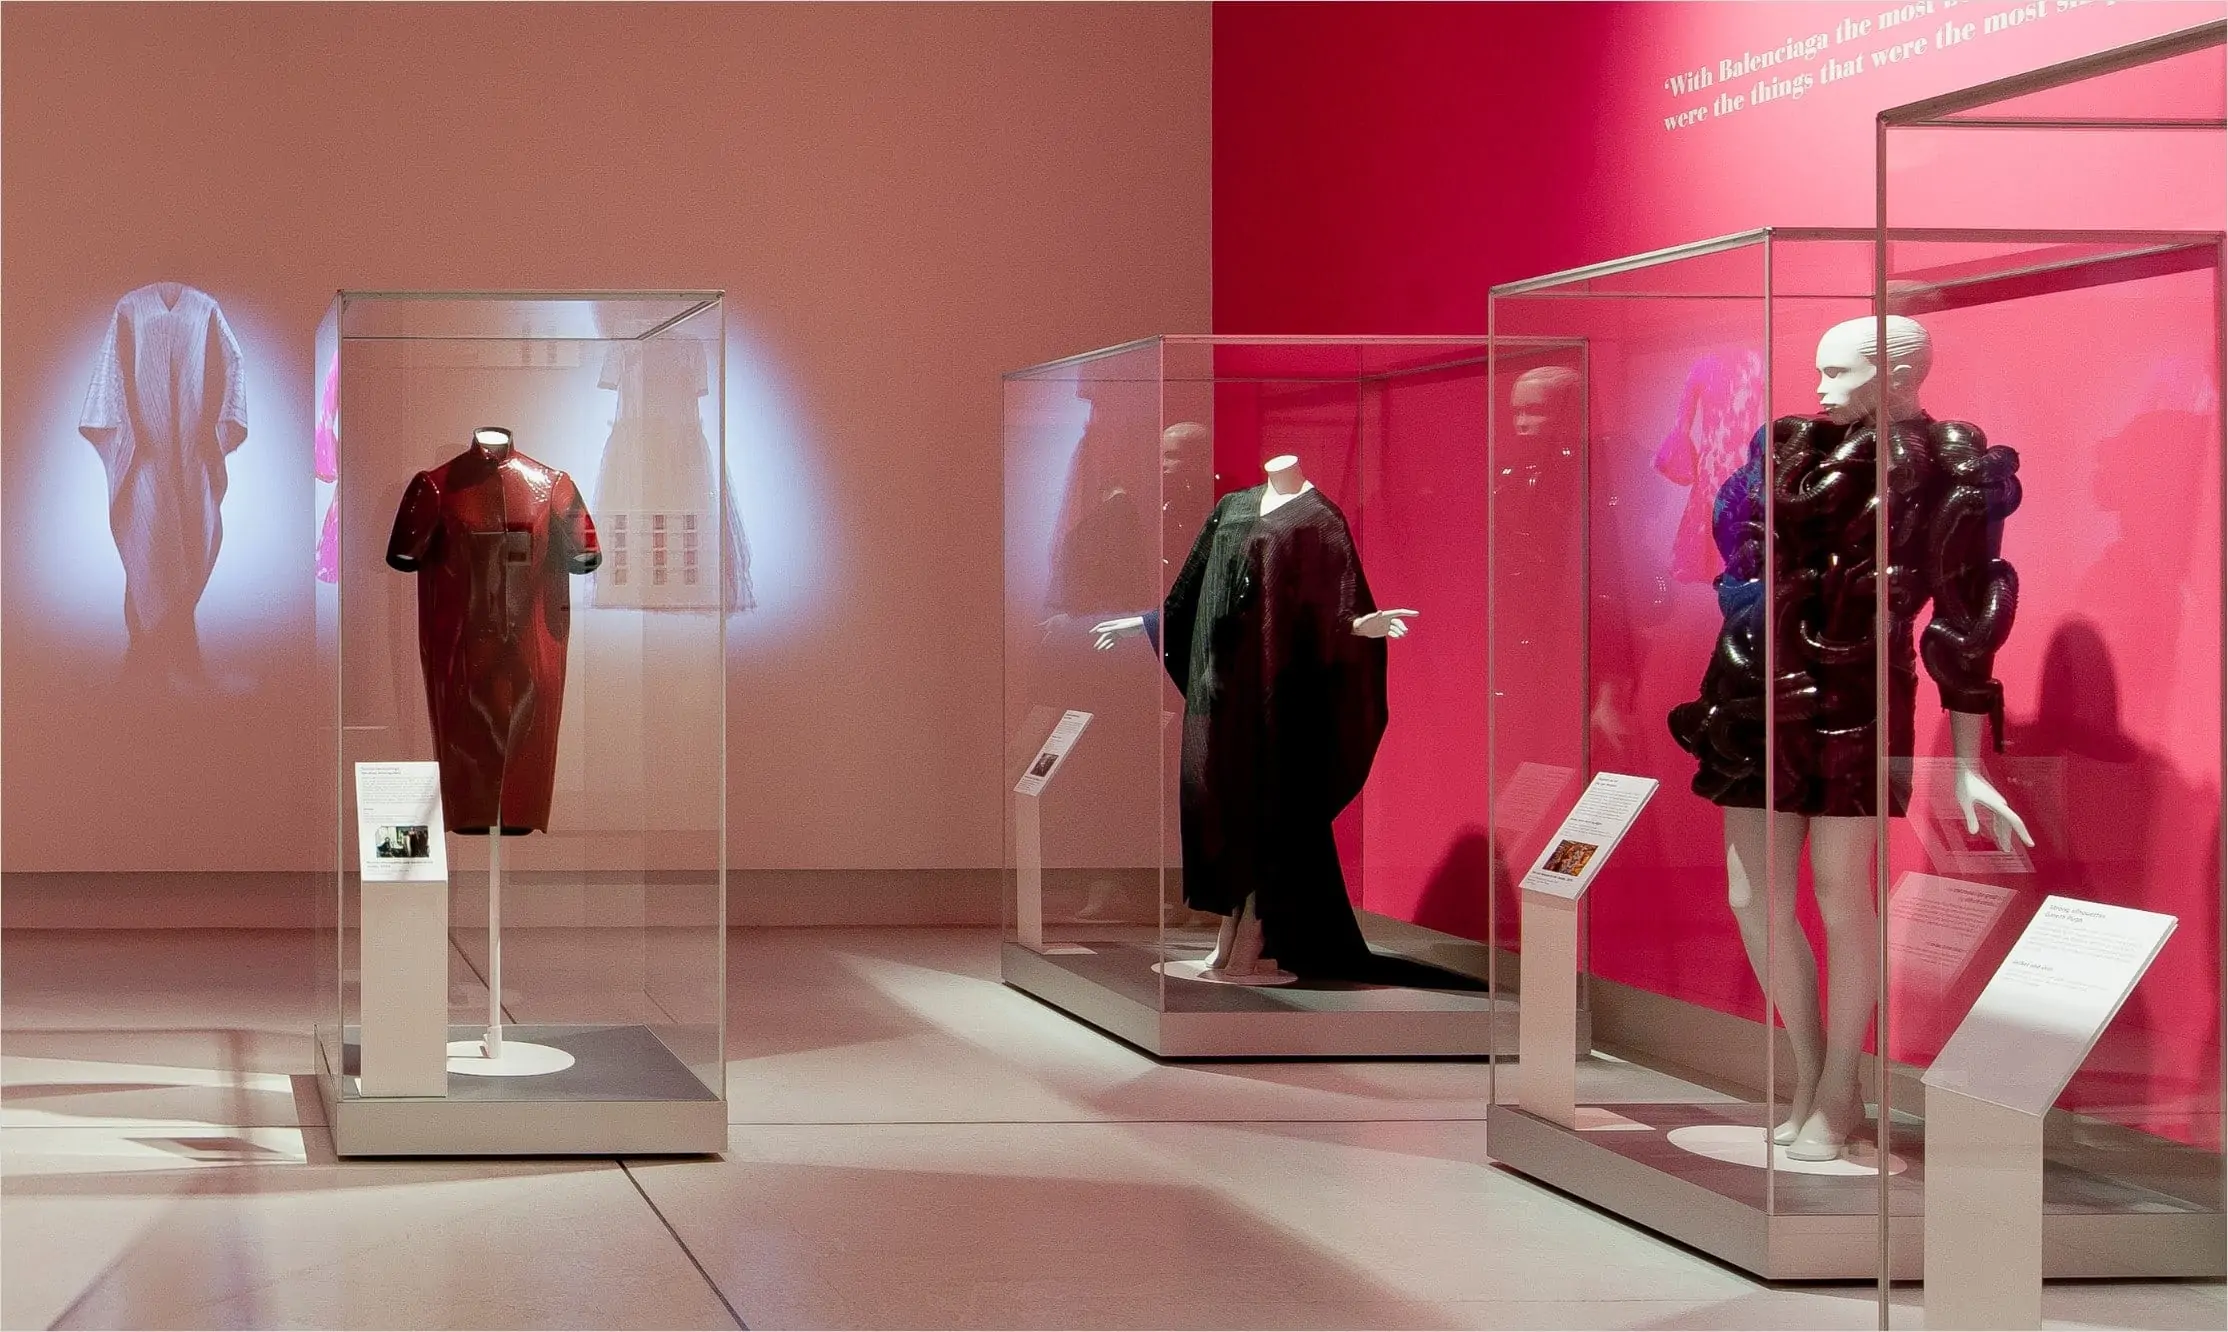 Balenciaga exhibition display showcases